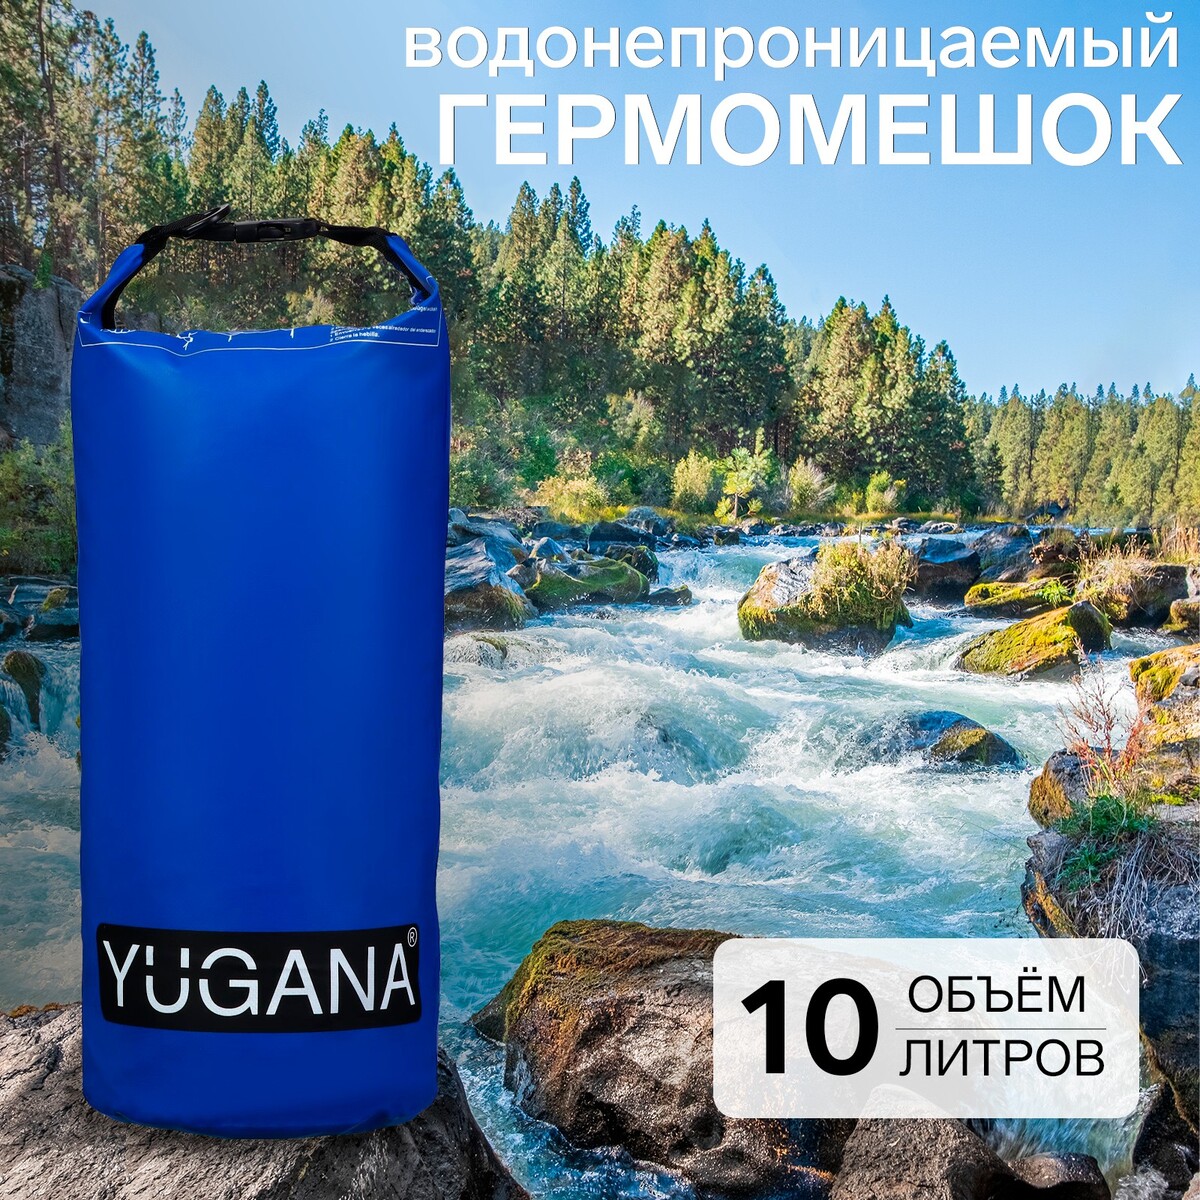 Гермомешок yugana, пвх, водонепроницаемый 10 литров, один ремень, синий